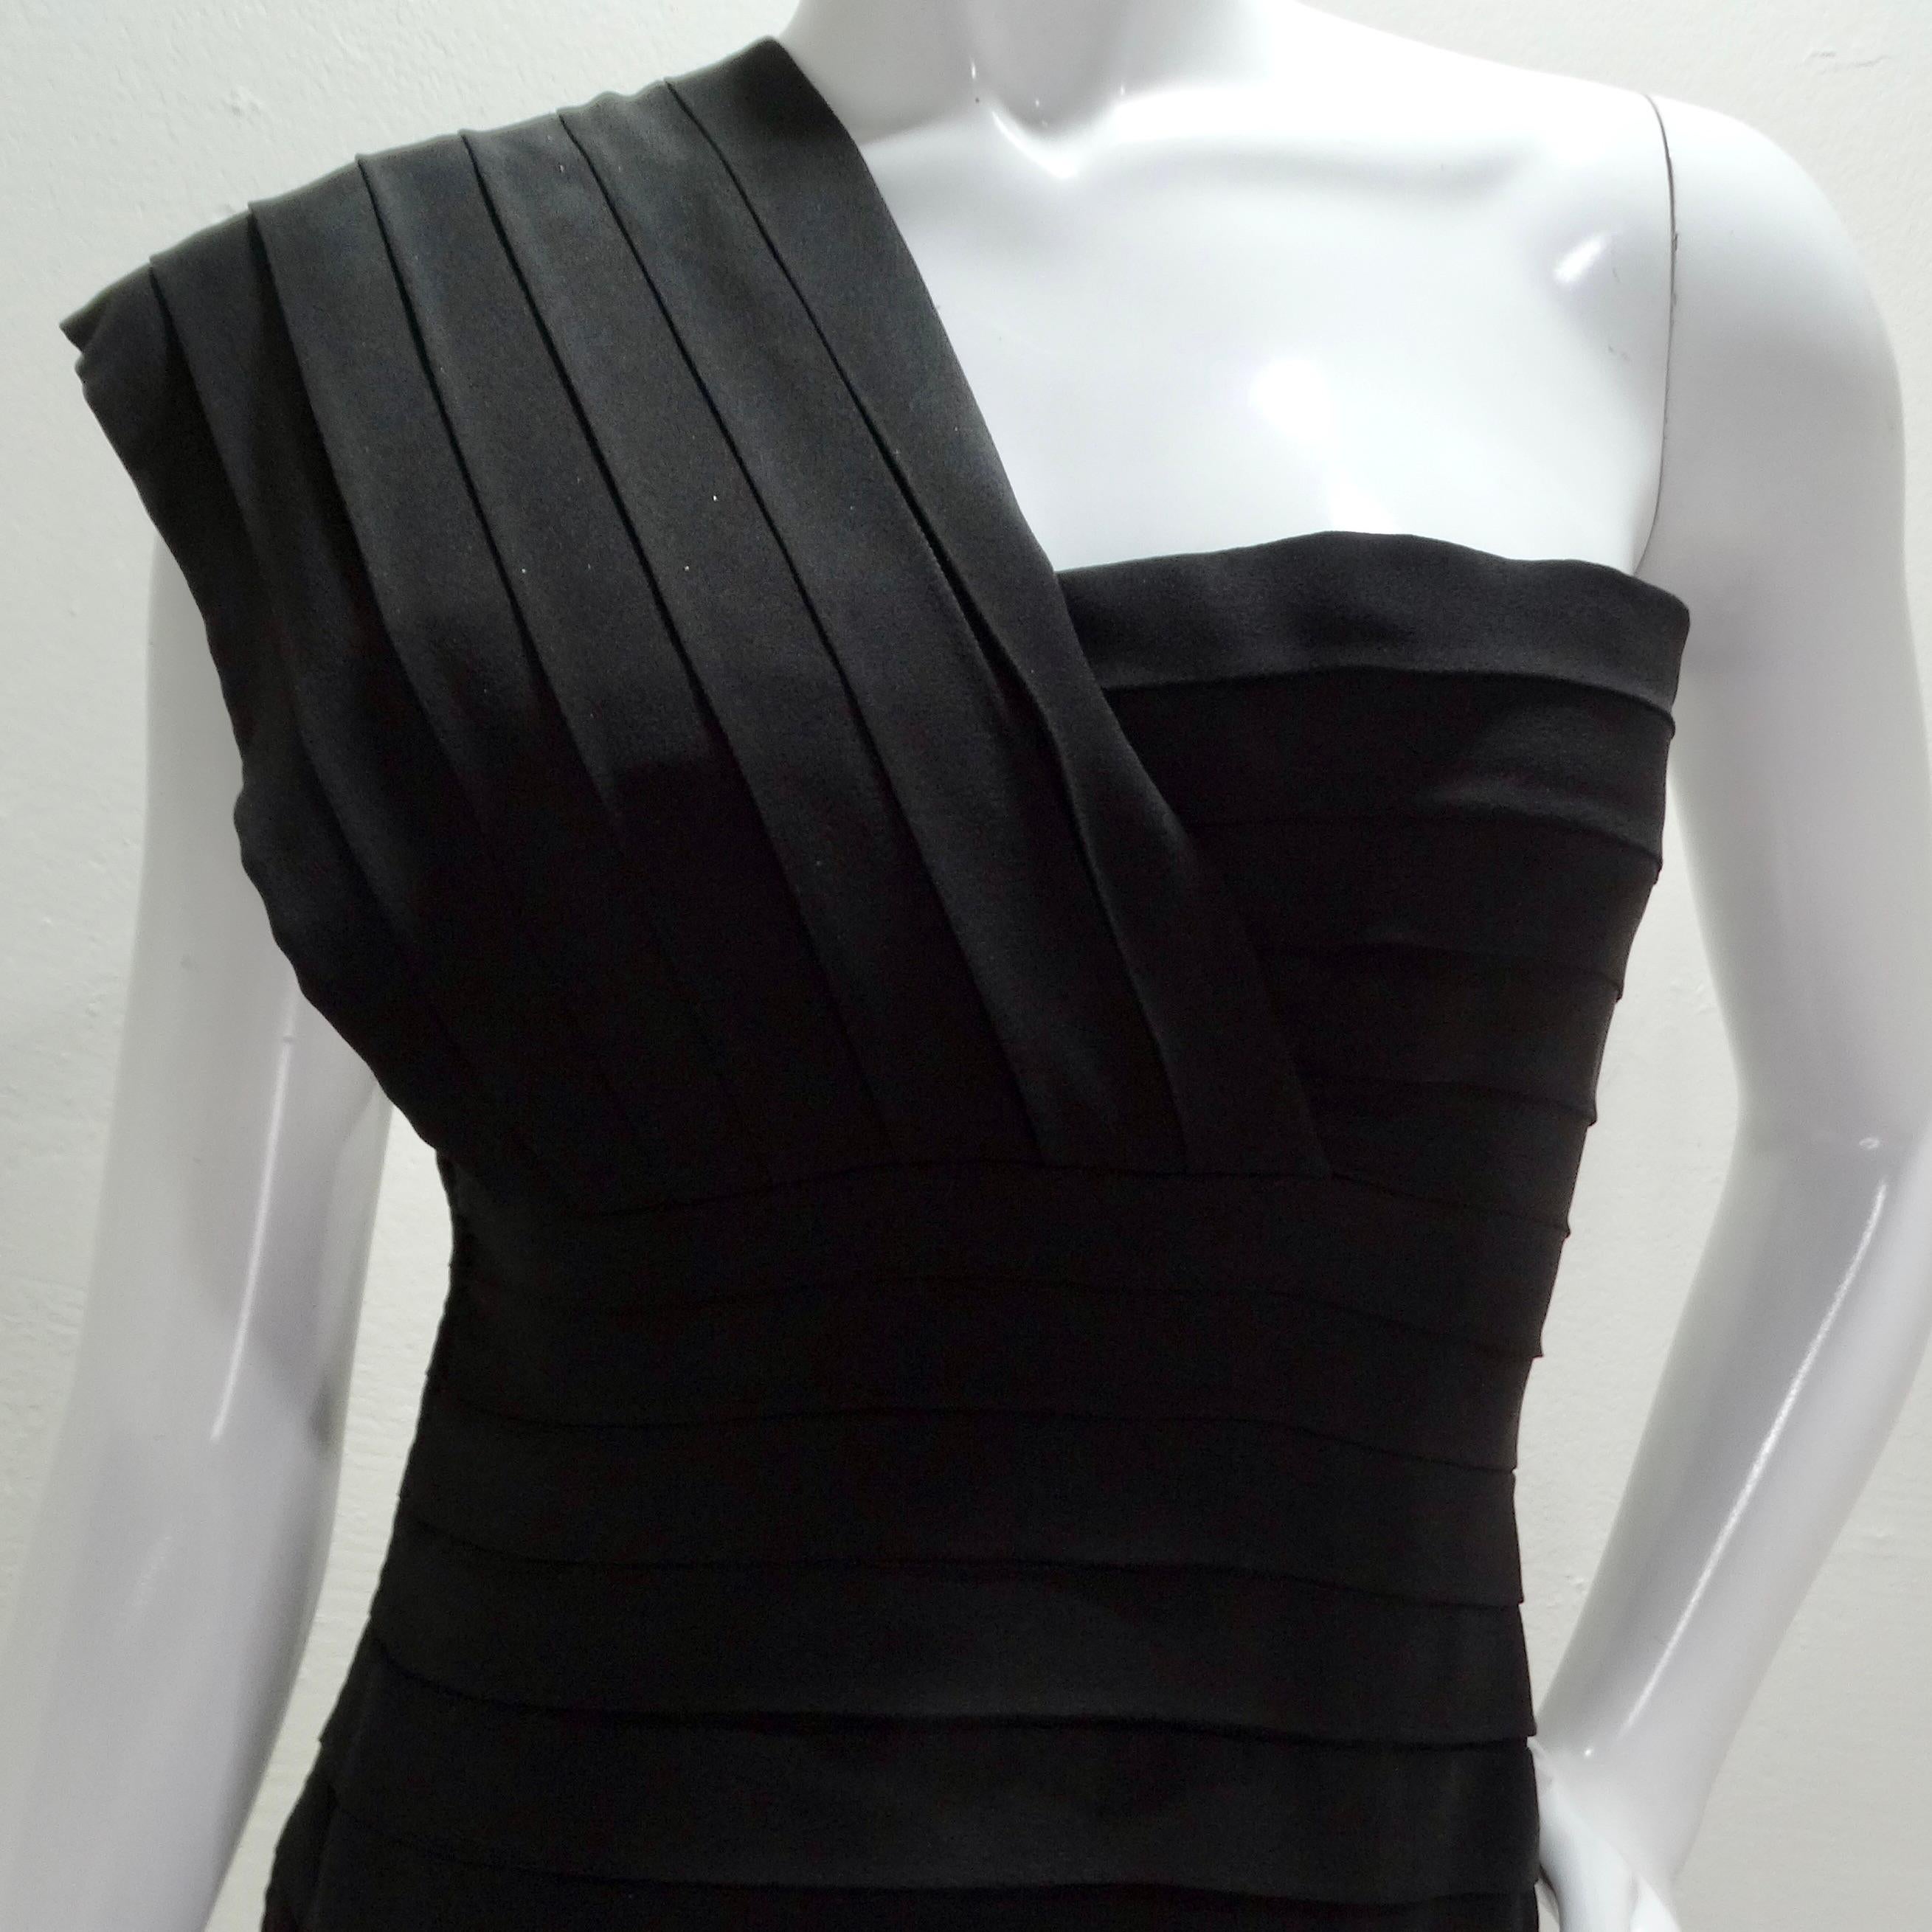 Entrez dans l'allure des années 1980 avec la robe asymétrique brodée d'étoiles Bernard Perris, une pièce captivante qui allie charme vintage et élégance intemporelle. Conçue avec une attention méticuleuse aux détails, cette mini robe plissée noire